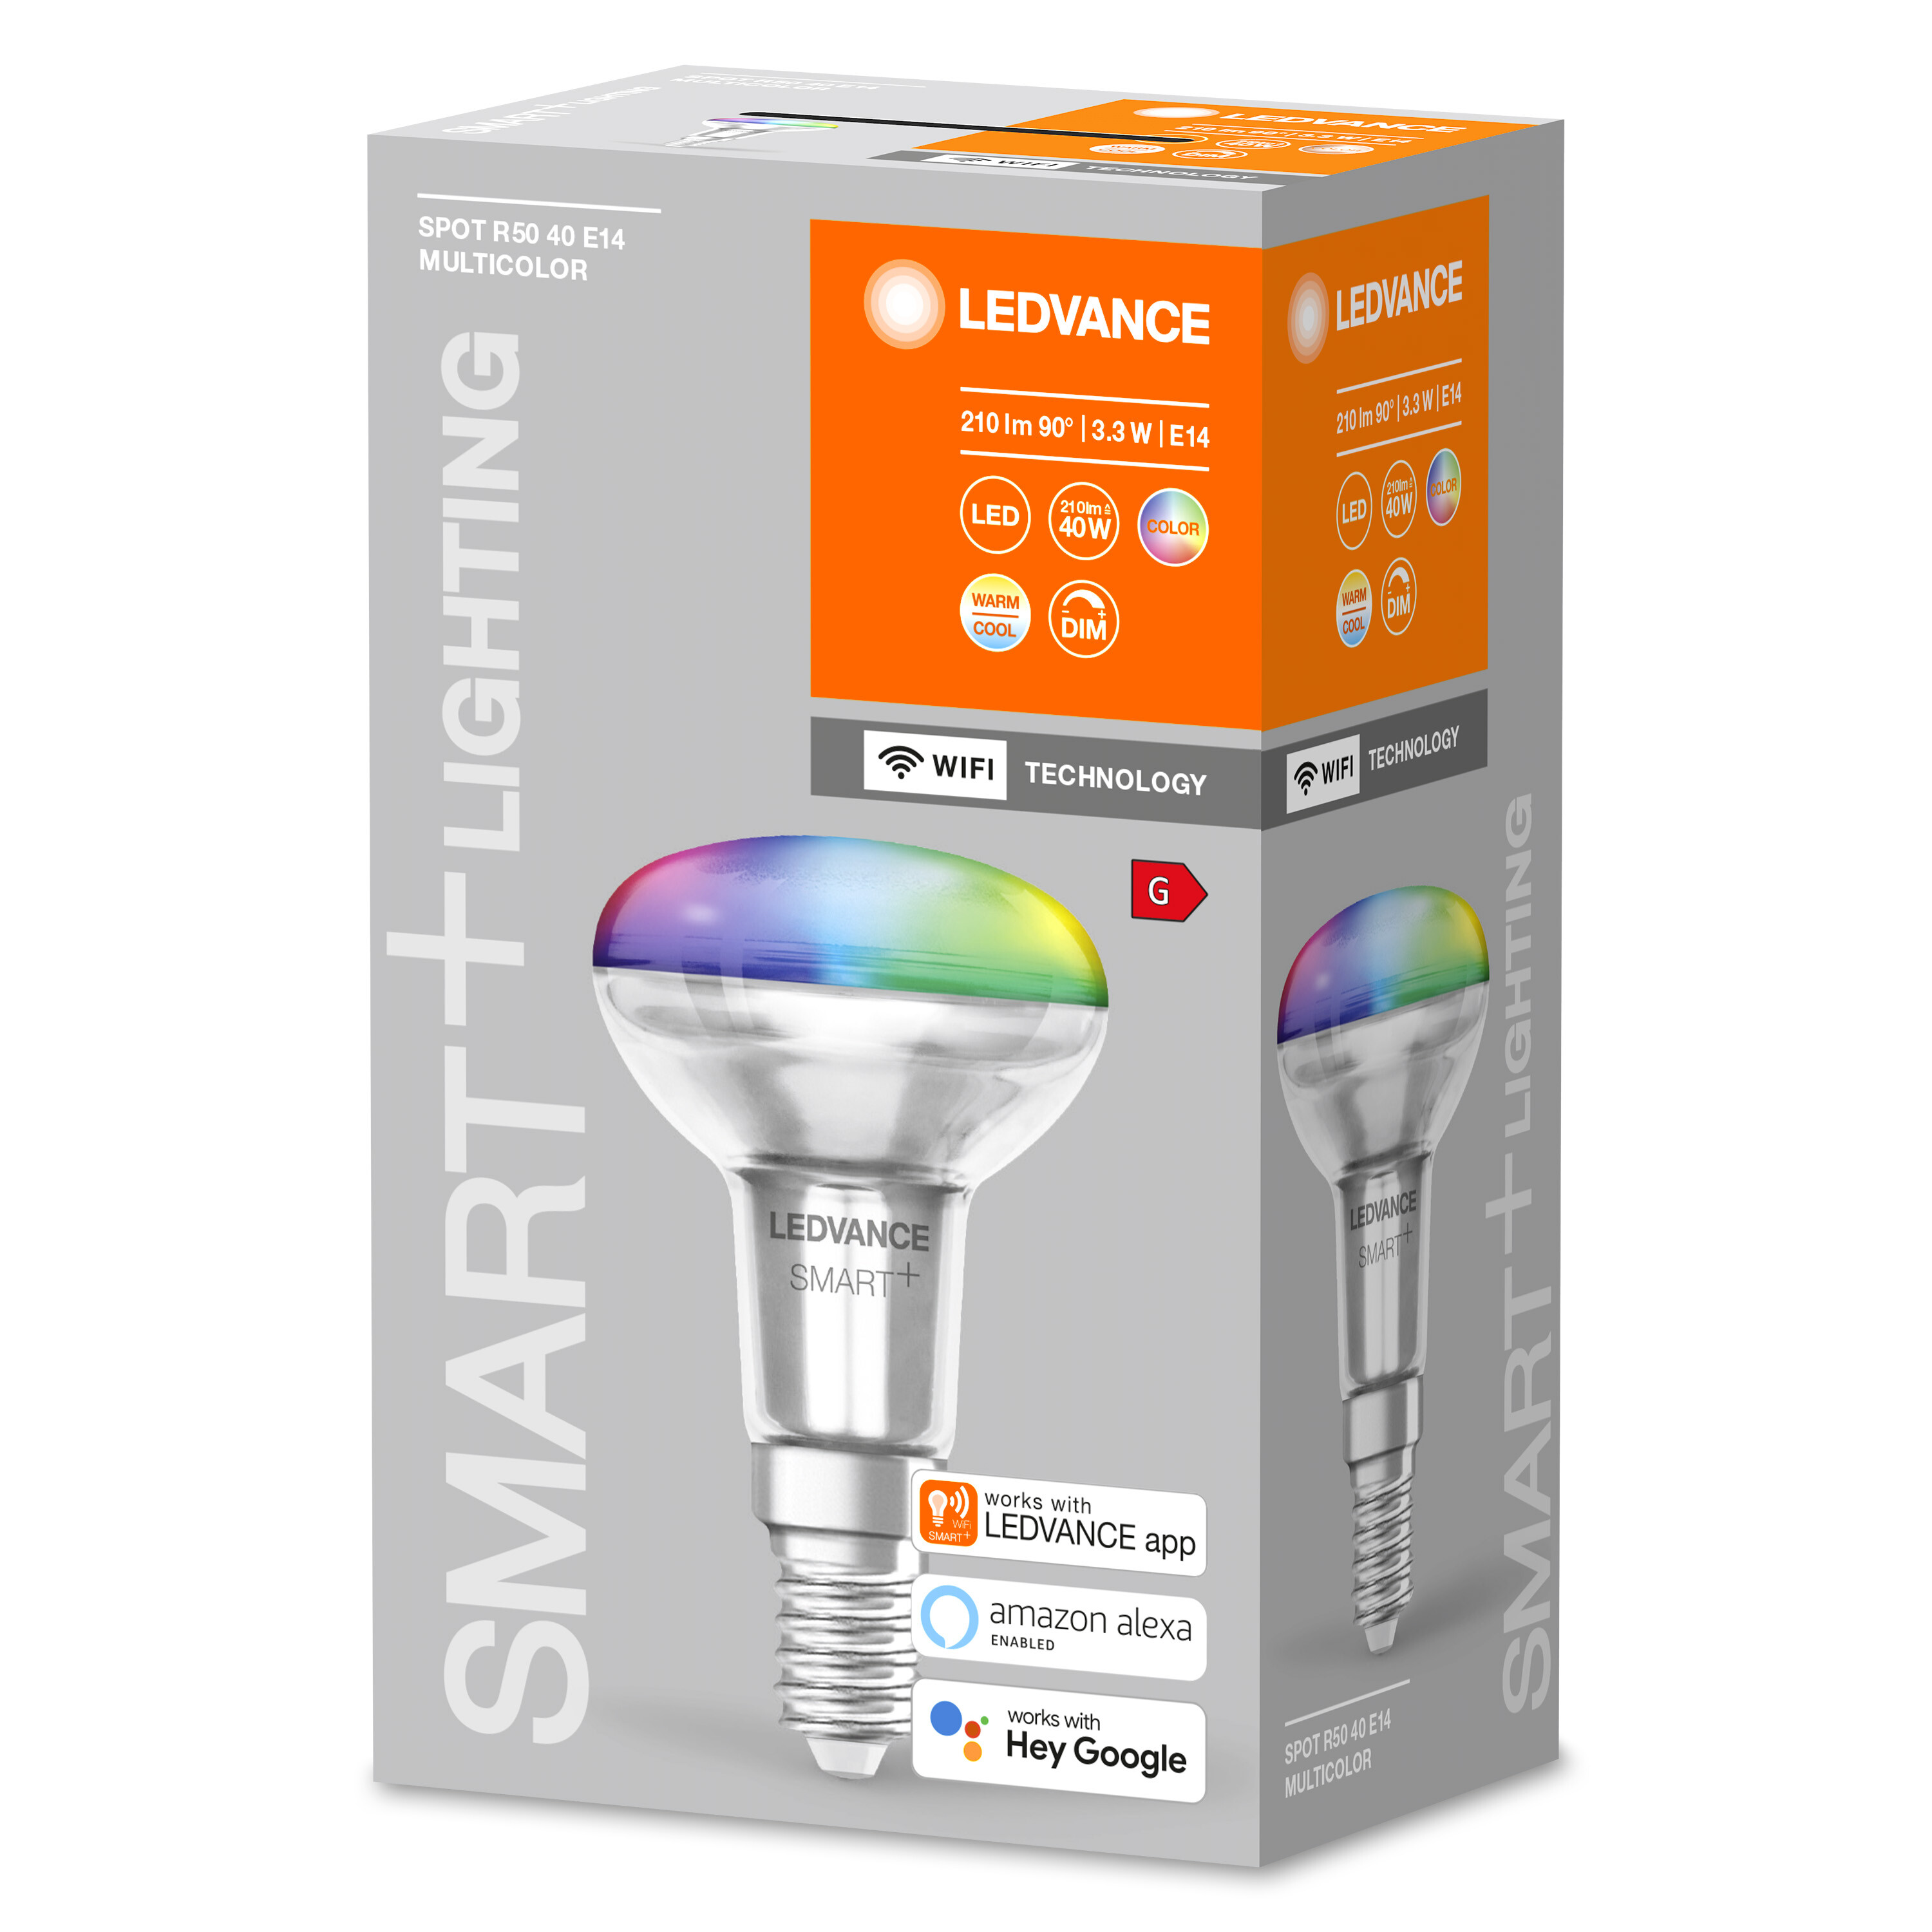 3W Lichtfarbe Multicolor E14 SPOT R50 40 Multicolor Lampe LEDVANCE SMART+ änderbar CONCENTRA LED